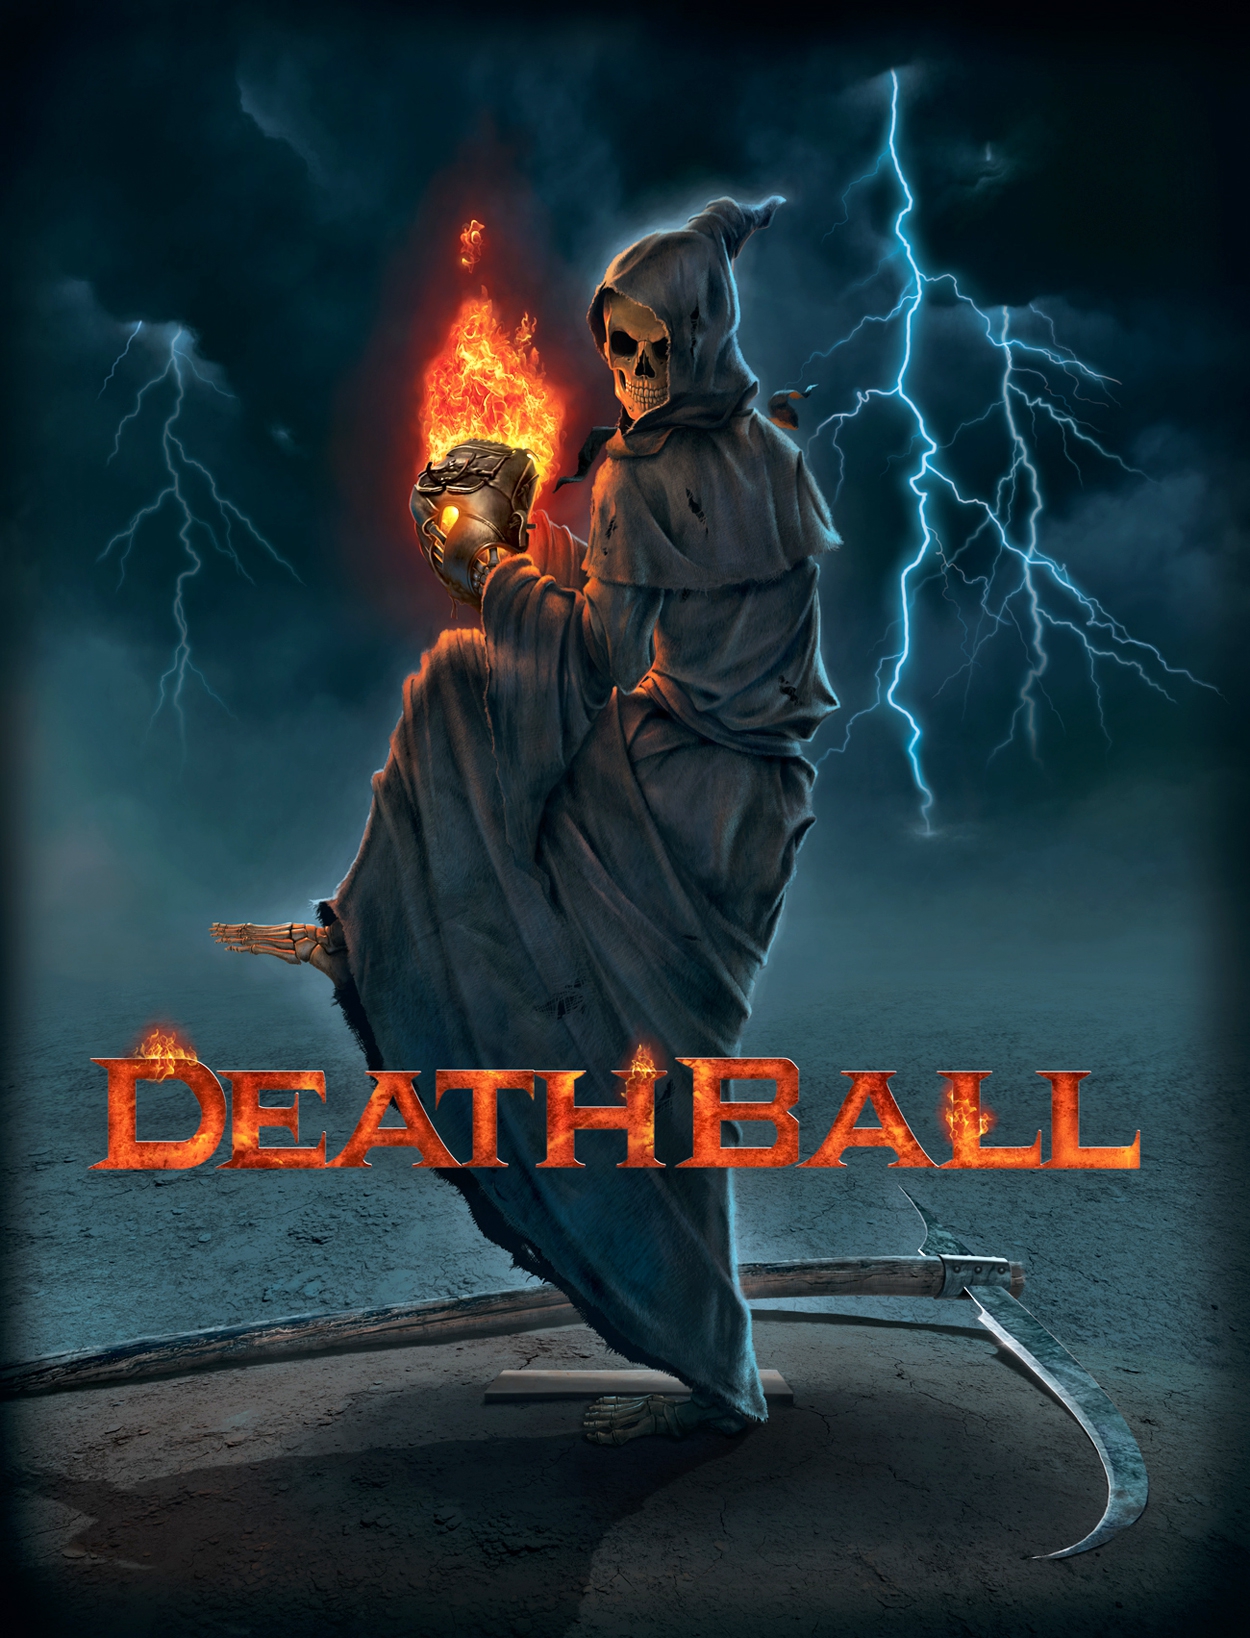 DeathBall